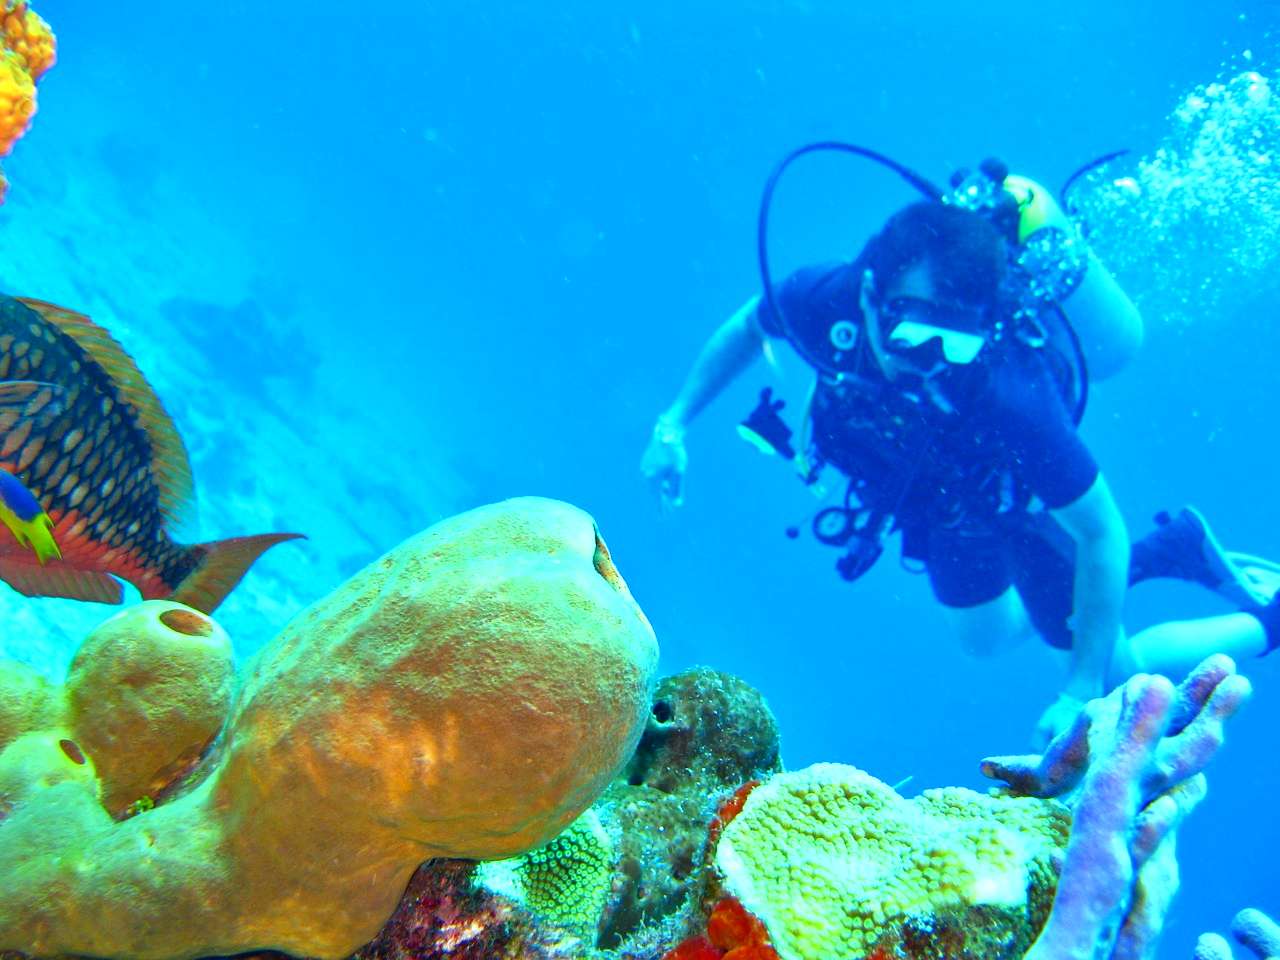 Scuba diving